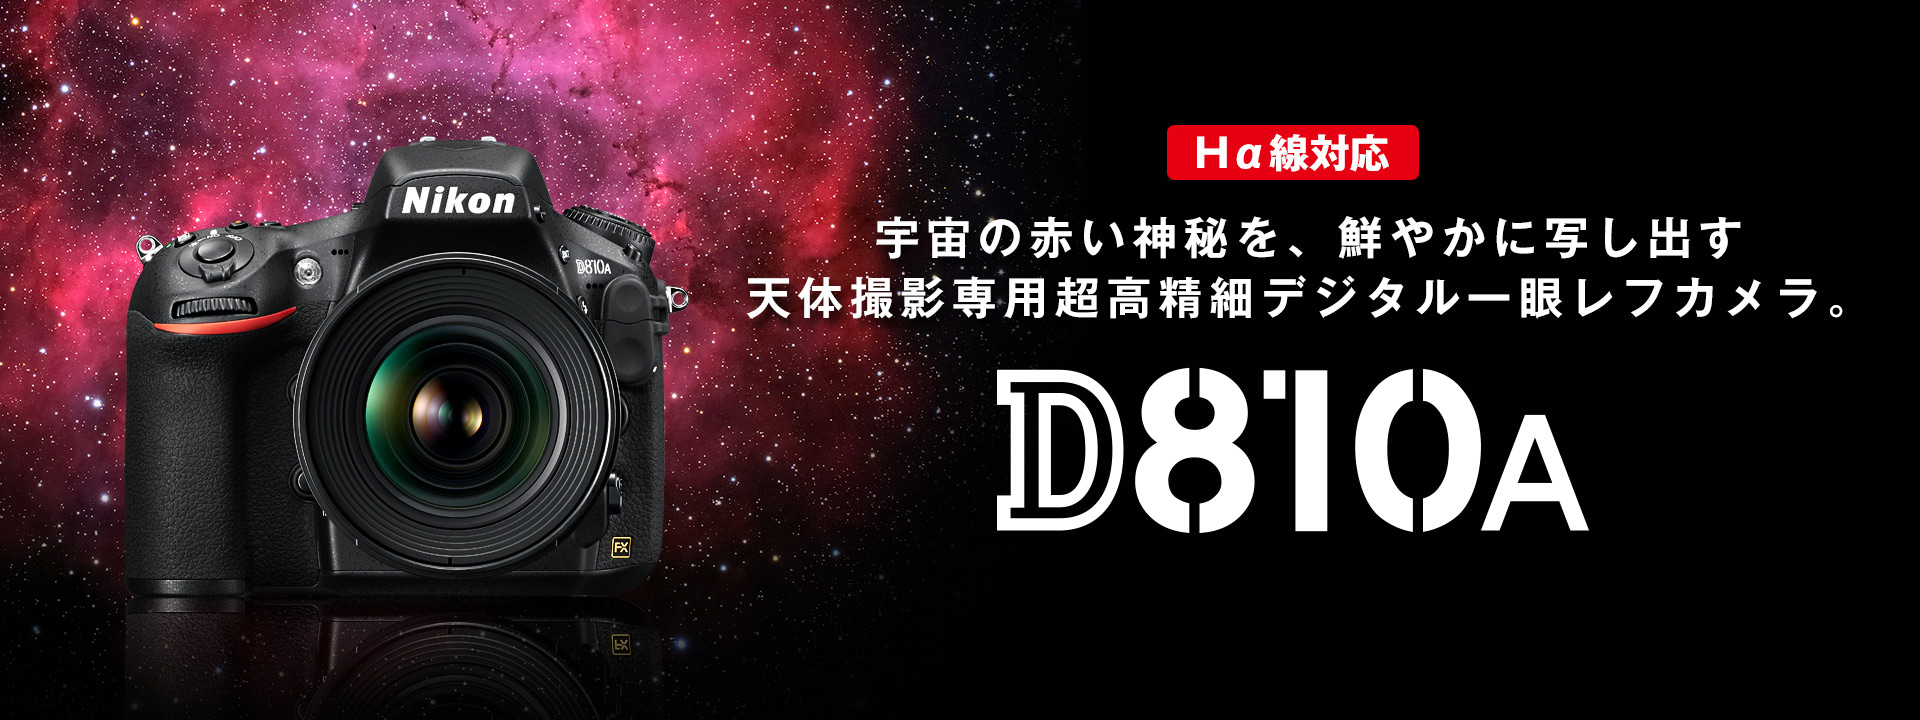 D810A - 概要 | 一眼レフカメラ | ニコンイメージング